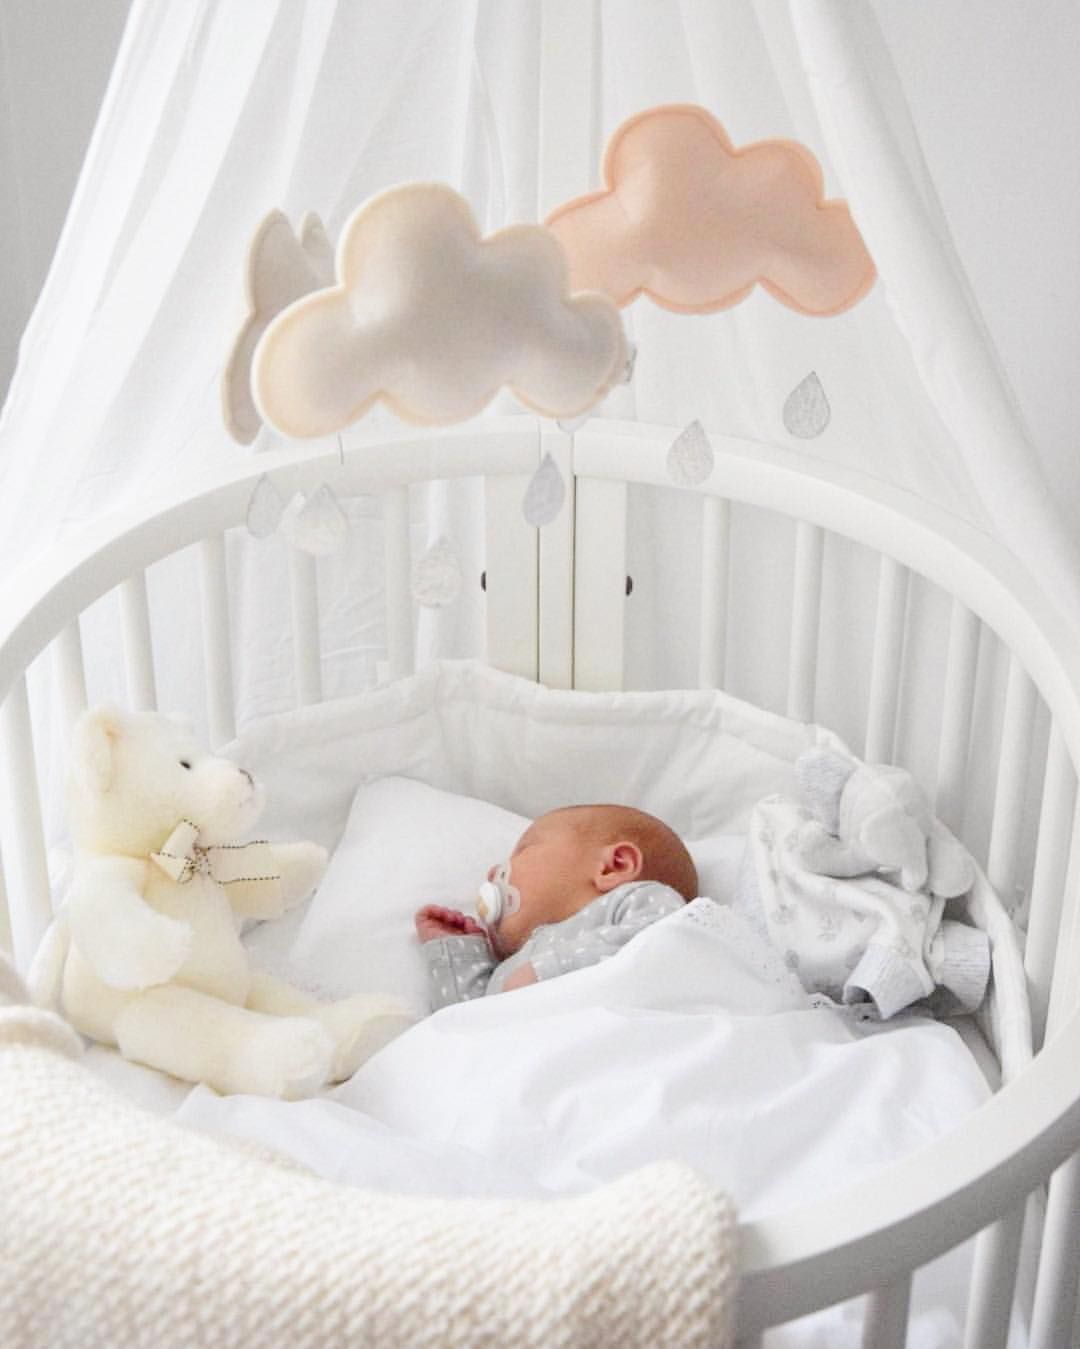 Что нужно в кроватку для новорожденного: список необходимых вещей и аксессуаров